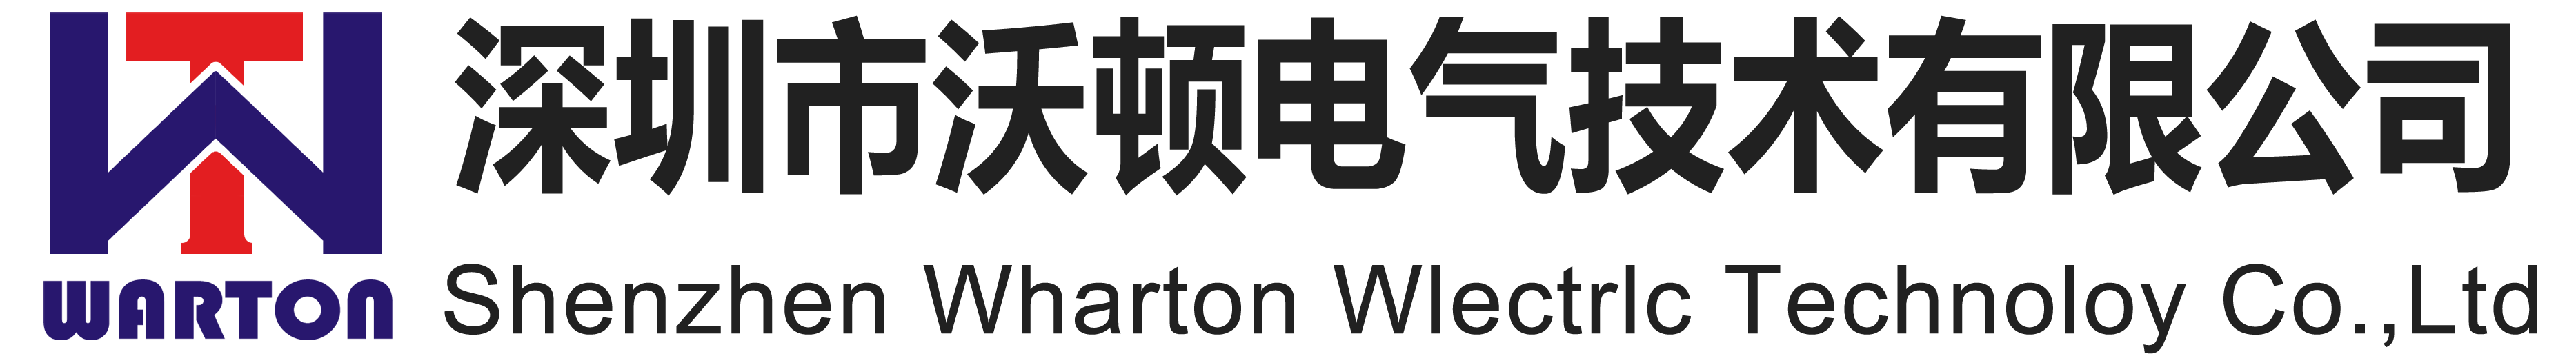 Shenzhen Wharton Electric Technology Co., Ltd